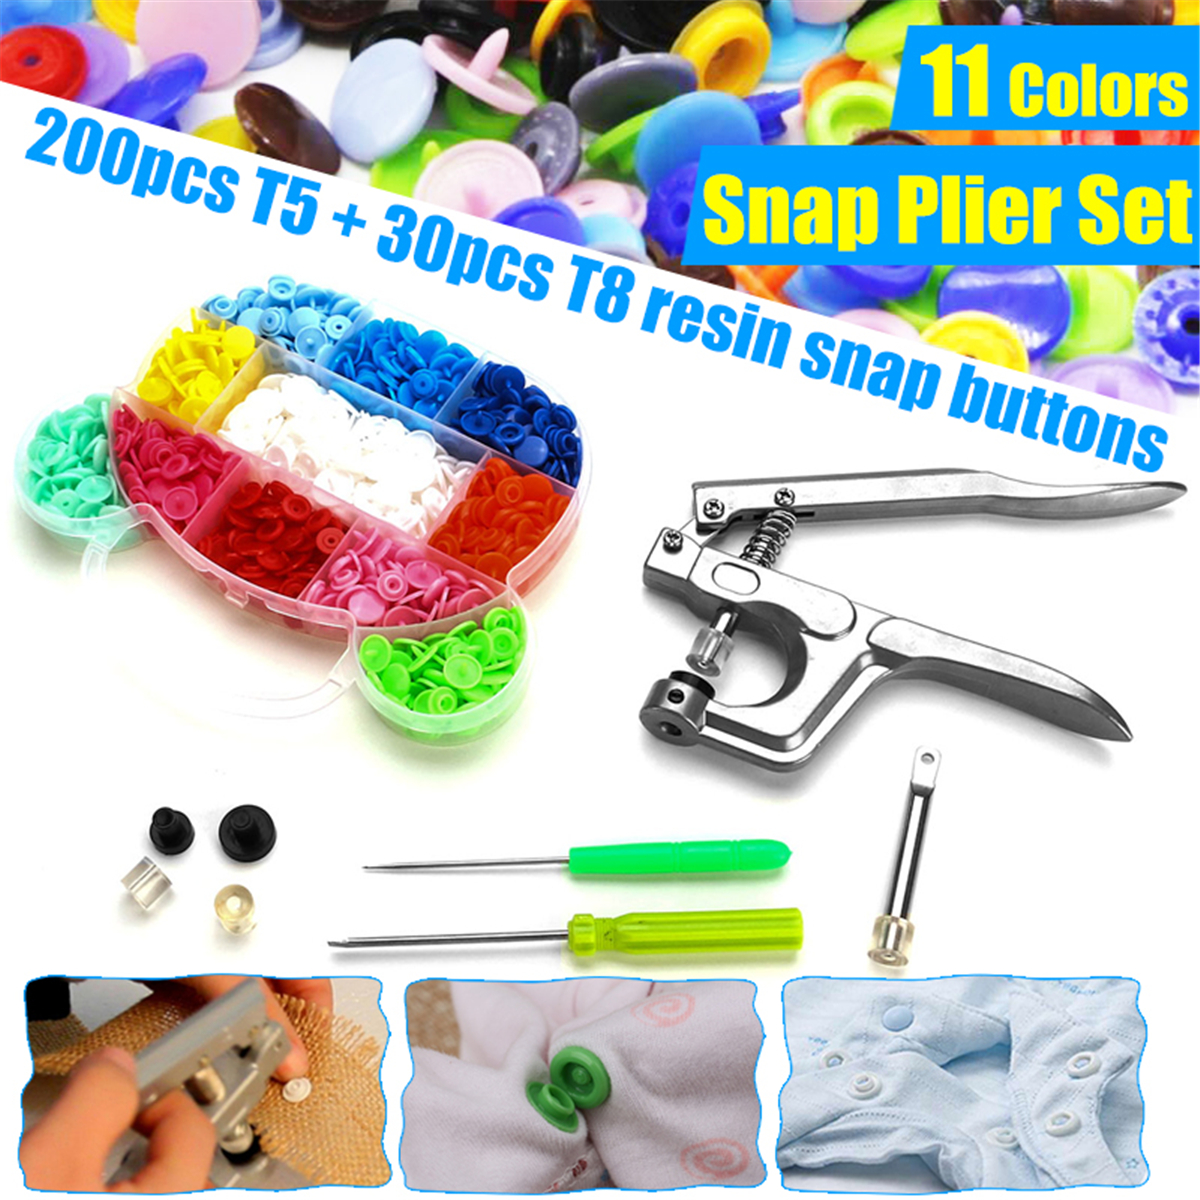 DIY-Snap-Pliers--200-Pcs-T5--30-Pcs-T8-Snap-Resin-Buttons-Fastener-11-Colors-1744441-1